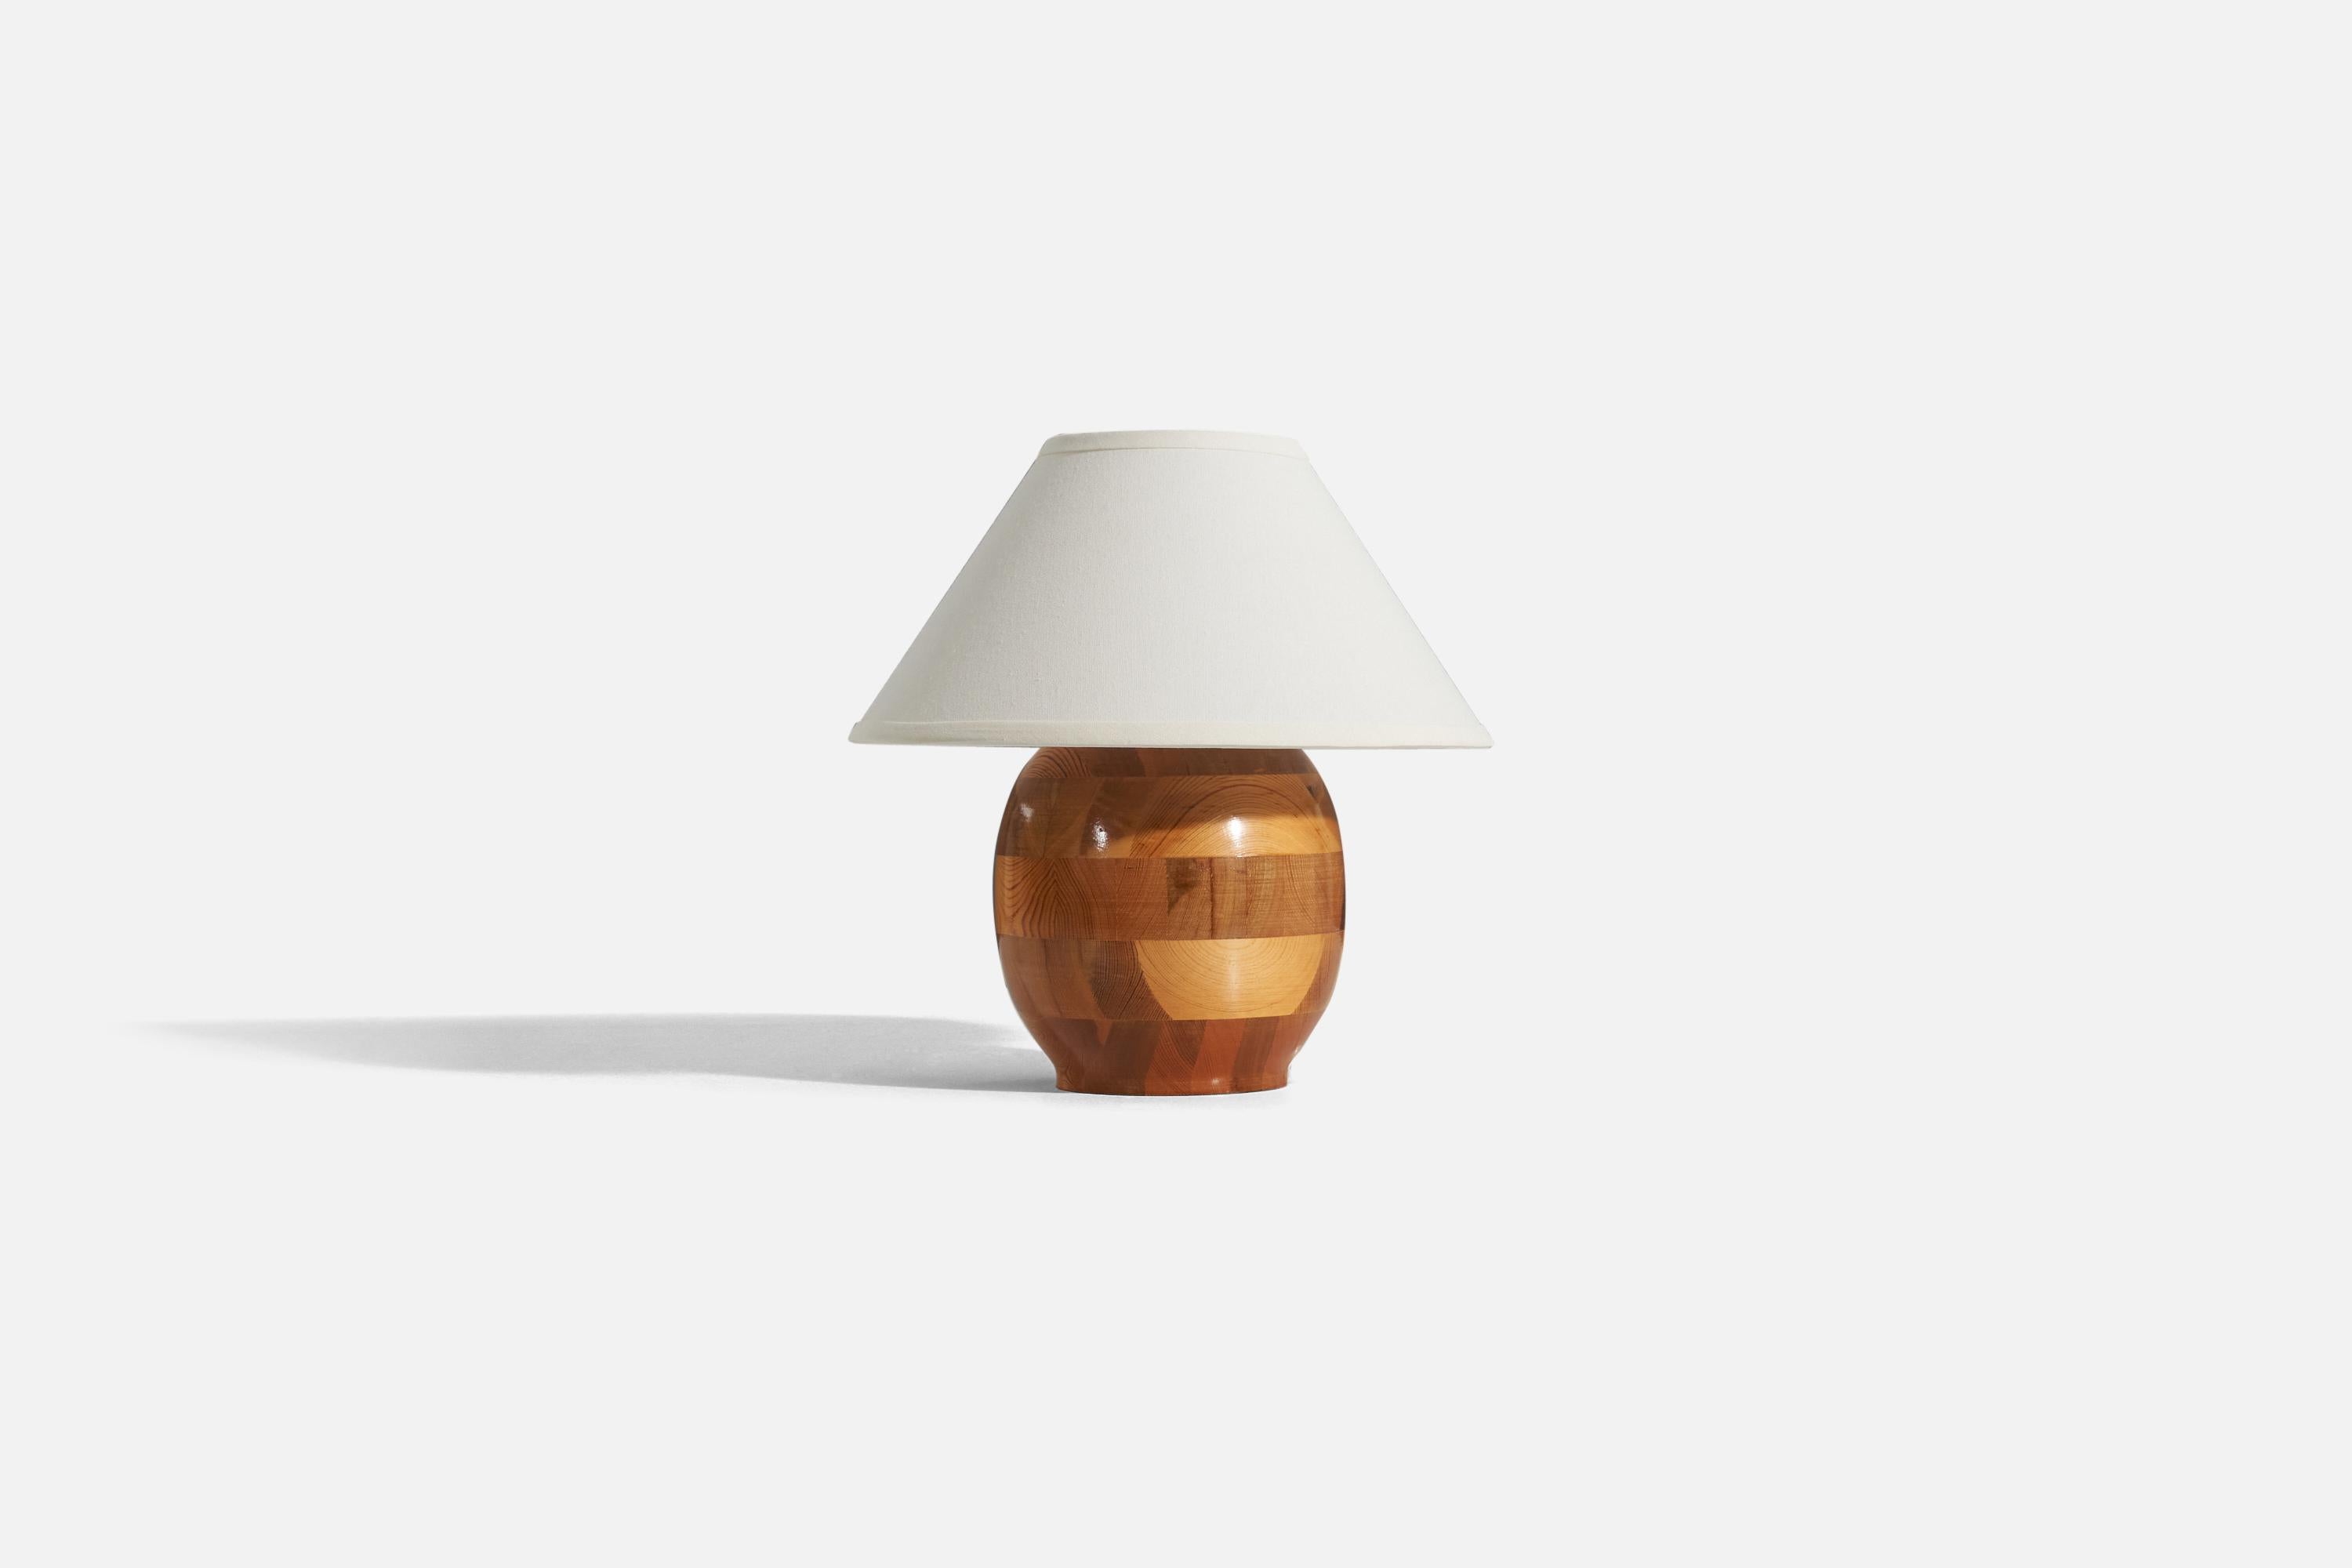 Eine Tischlampe aus Kiefernholz, entworfen und hergestellt von einem schwedischen Designer, Schweden, 1960er Jahre.

Verkauft ohne Lampenschirm. 
Abmessungen der Lampe (Zoll) : 10.75 x 7,25 x 7,25 (H x B x T)
Abmessungen des Schirms (Zoll) :